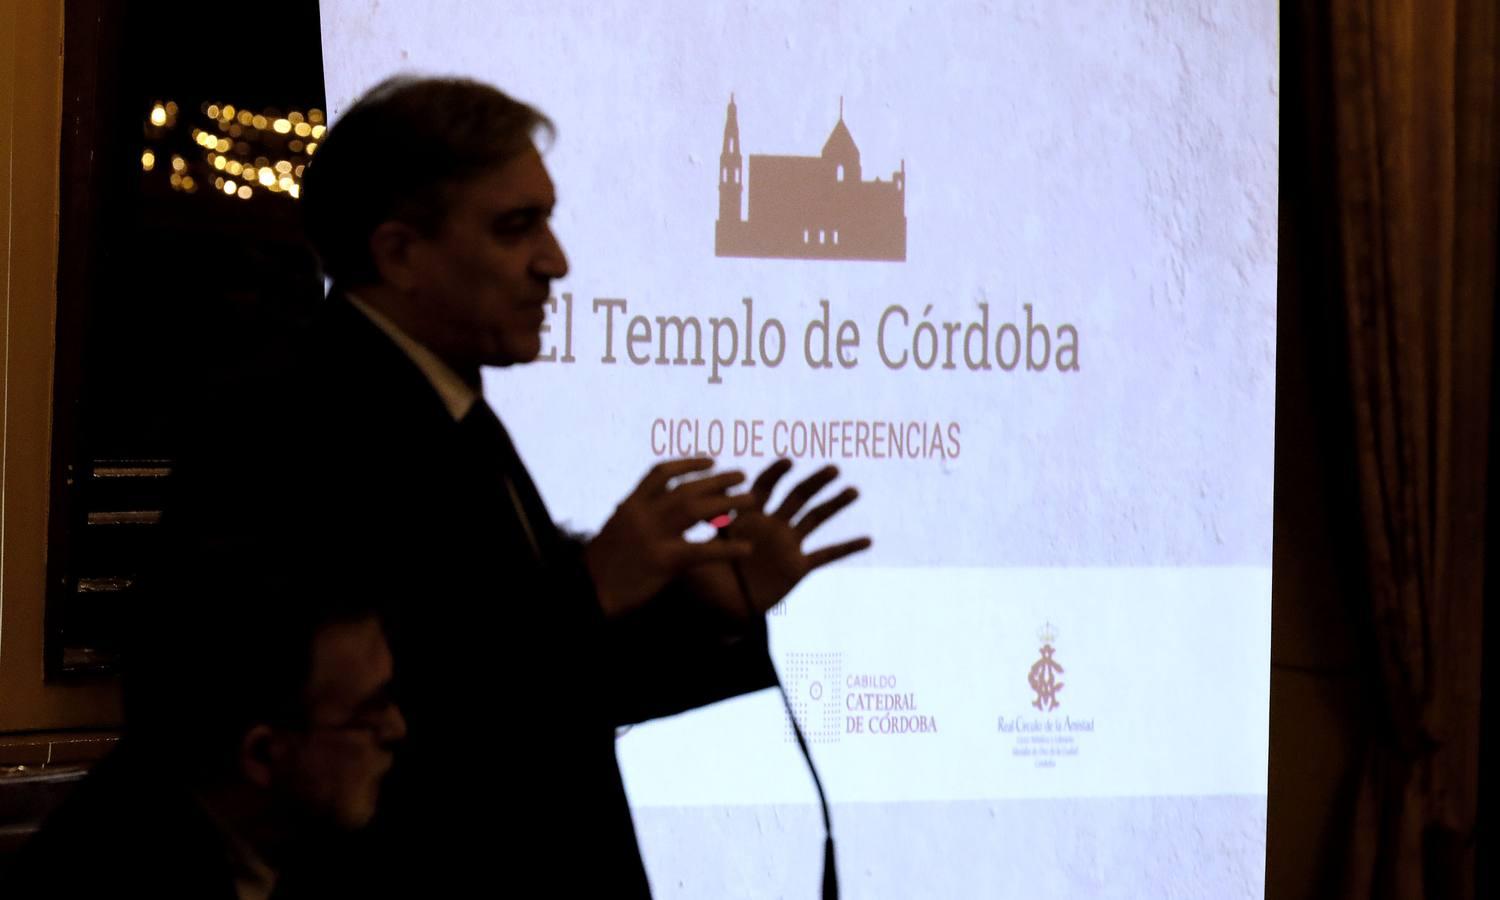 La conferencia de José Luis Corral en el Templo de Córdoba, en imágenes